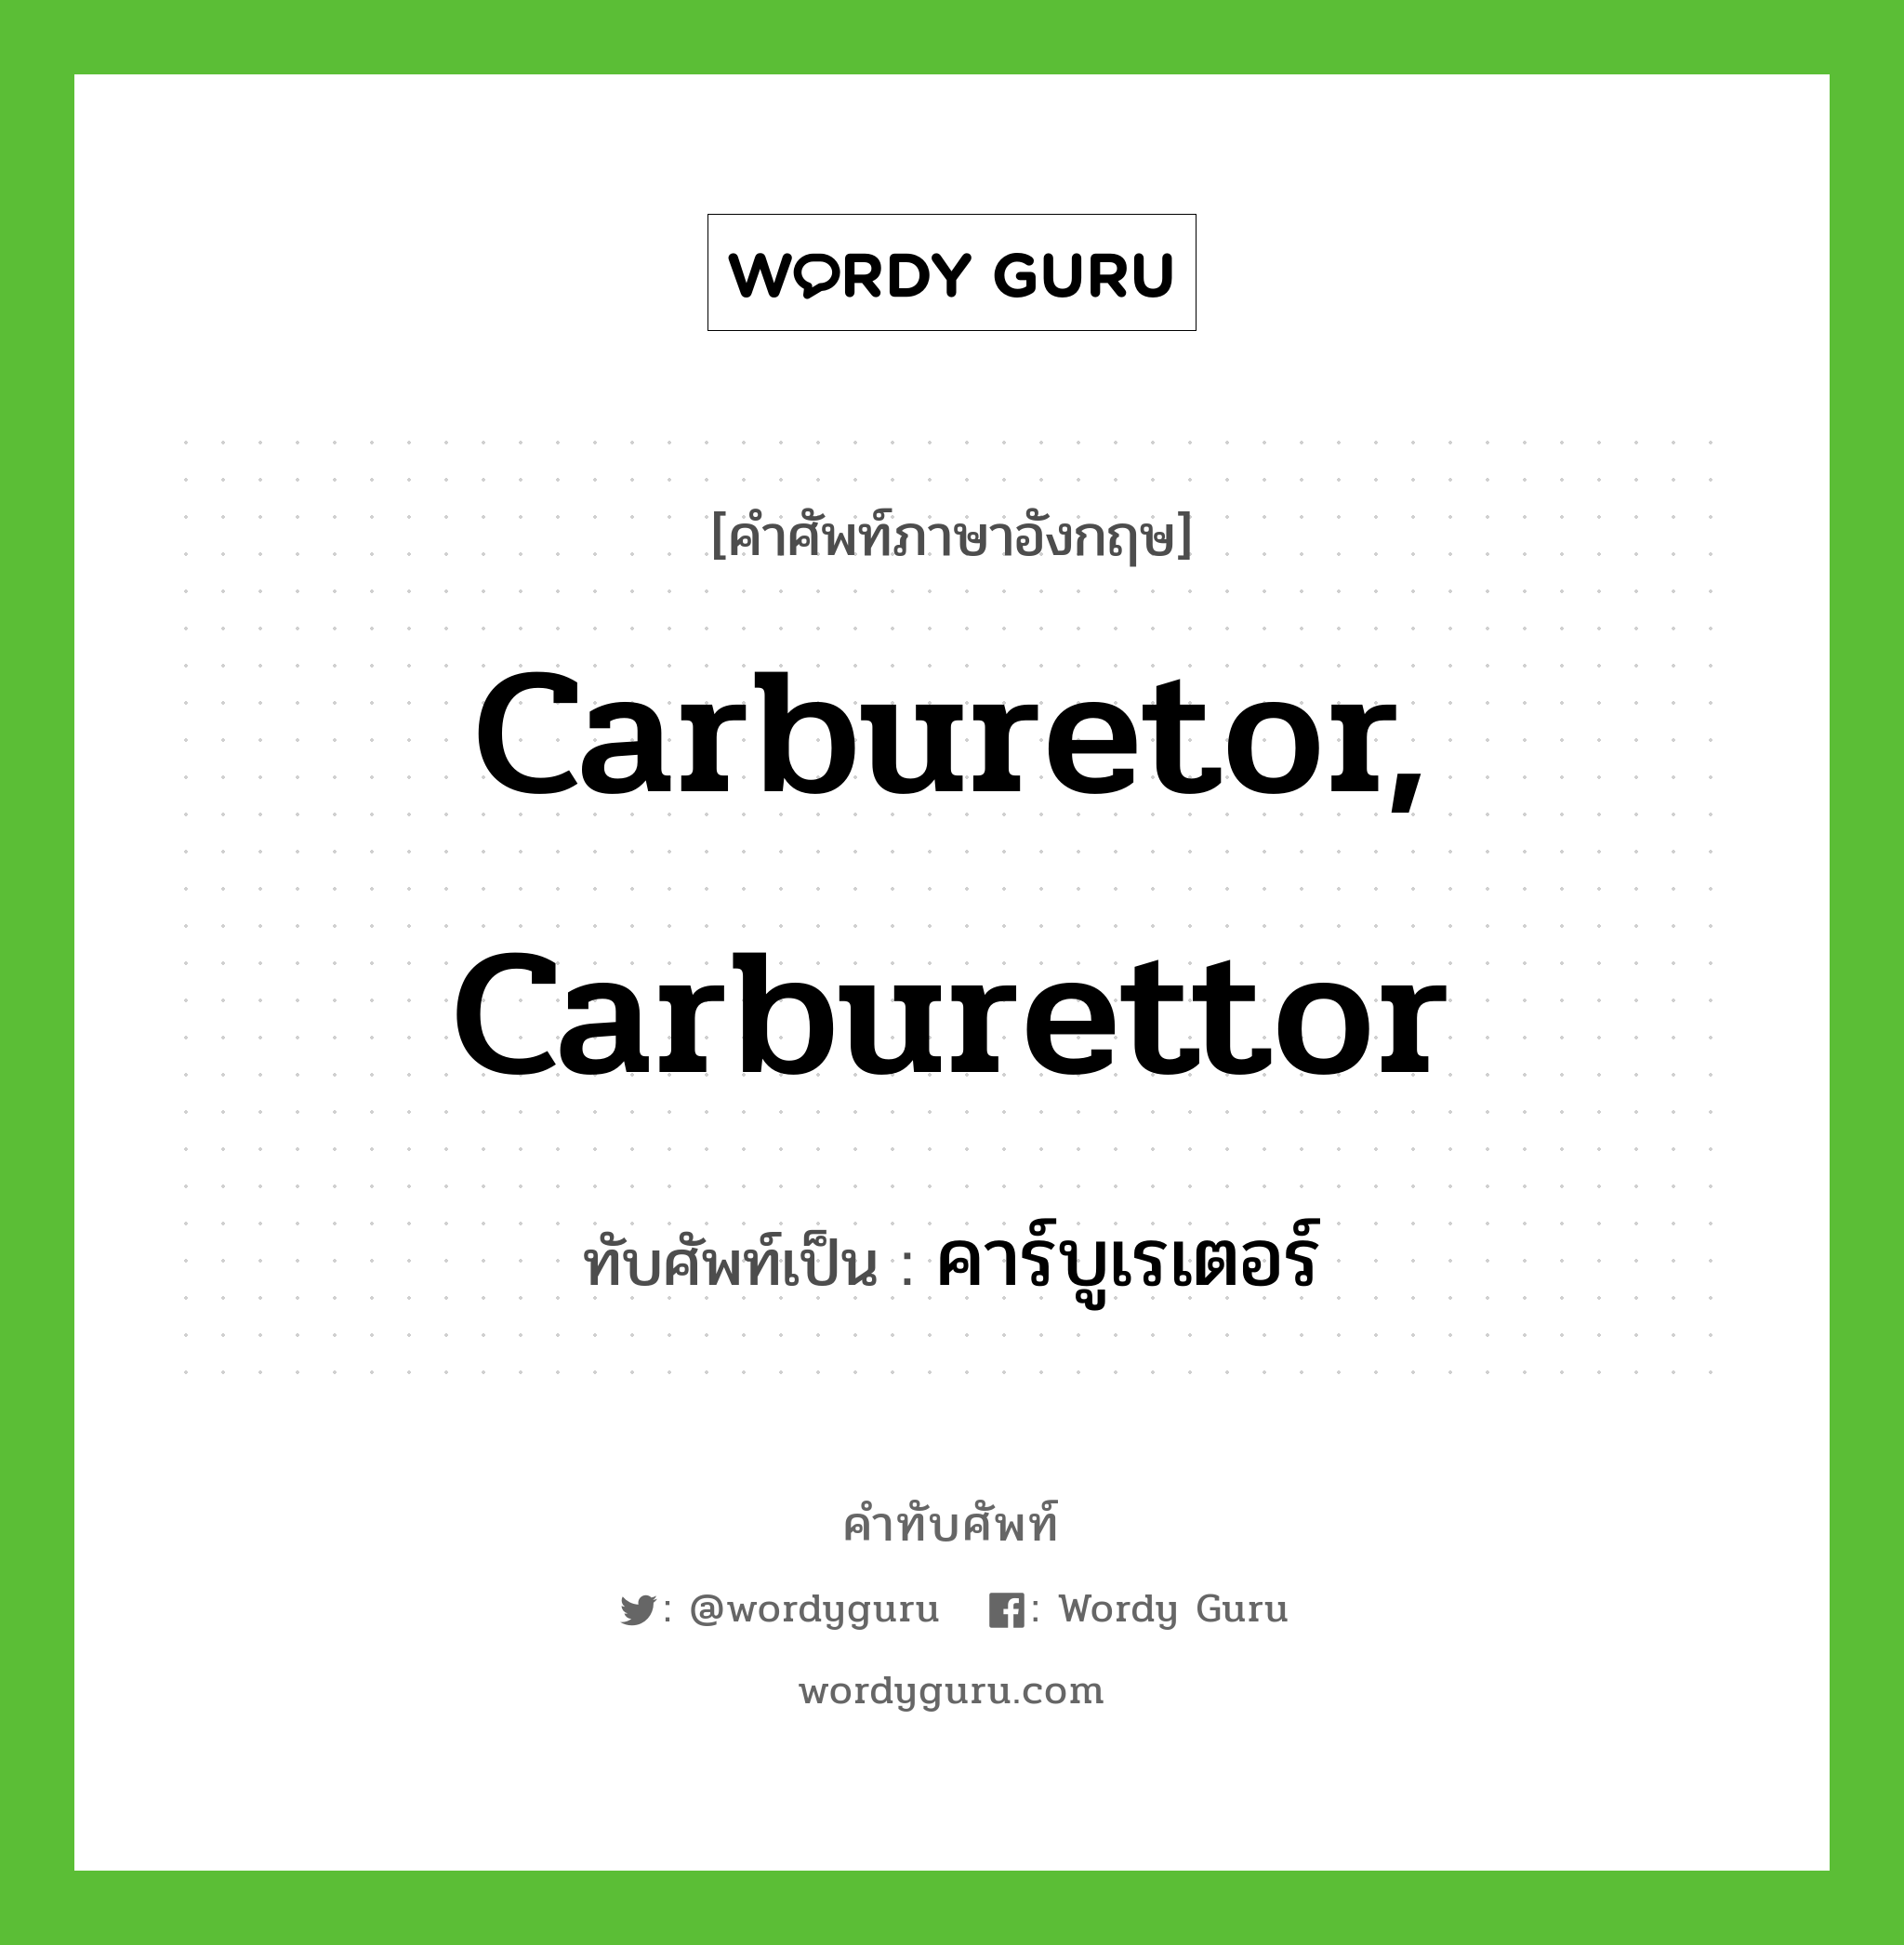 carburetor, carburettor เขียนเป็นคำไทยว่าอะไร?, คำศัพท์ภาษาอังกฤษ carburetor, carburettor ทับศัพท์เป็น คาร์บูเรเตอร์